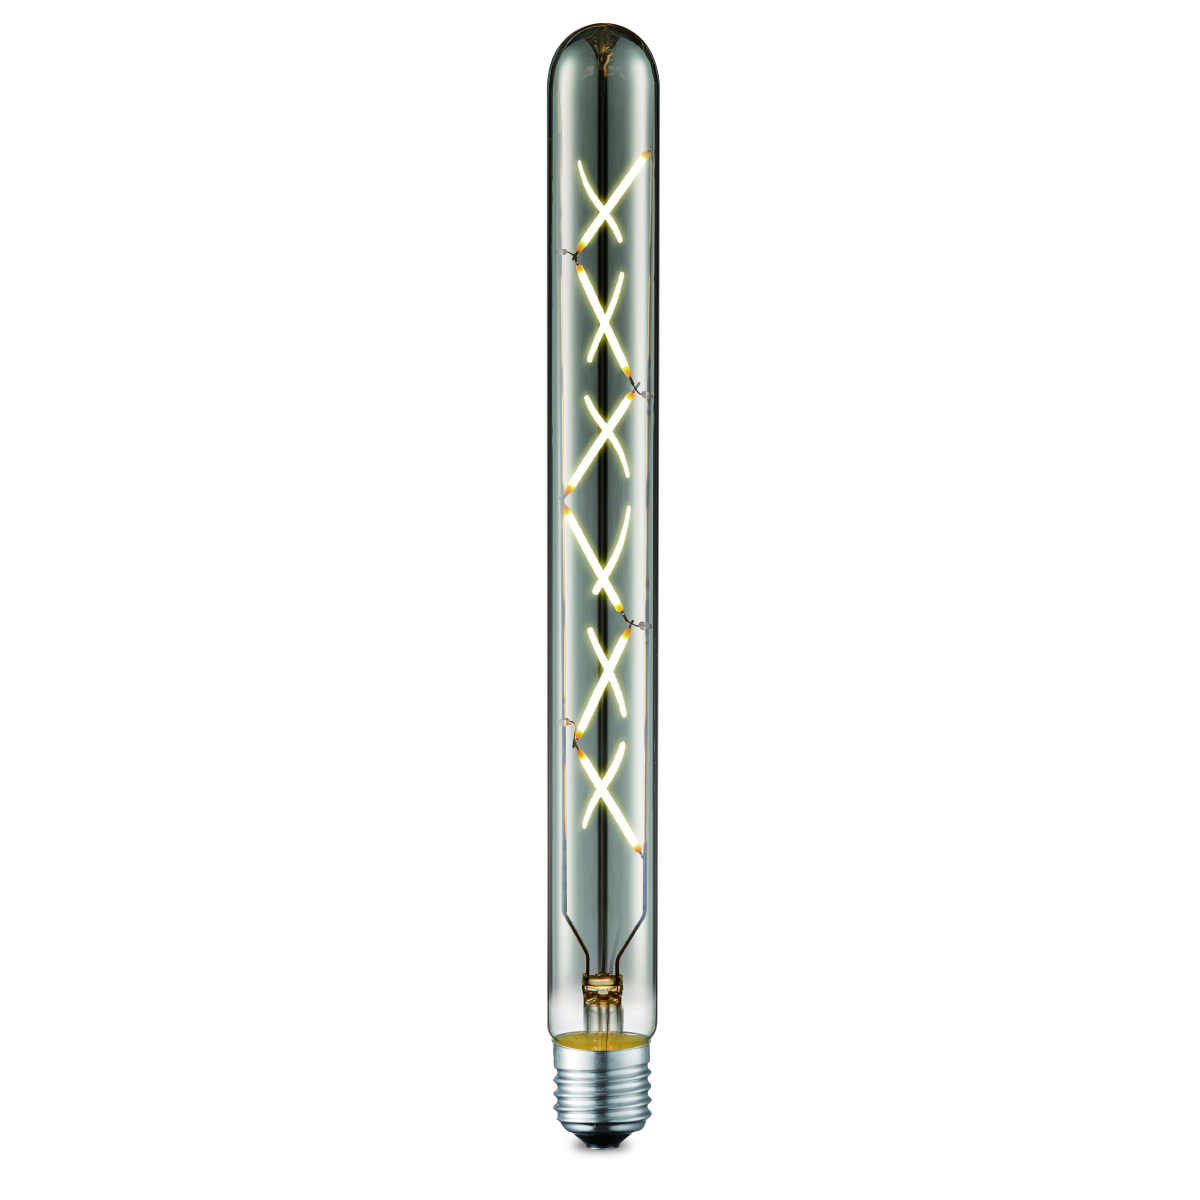 Tangla lighting - TLB-8025-05TM - LED Light Bulb Deco filament - special T30 5W titanium - tube - dimmable - E27